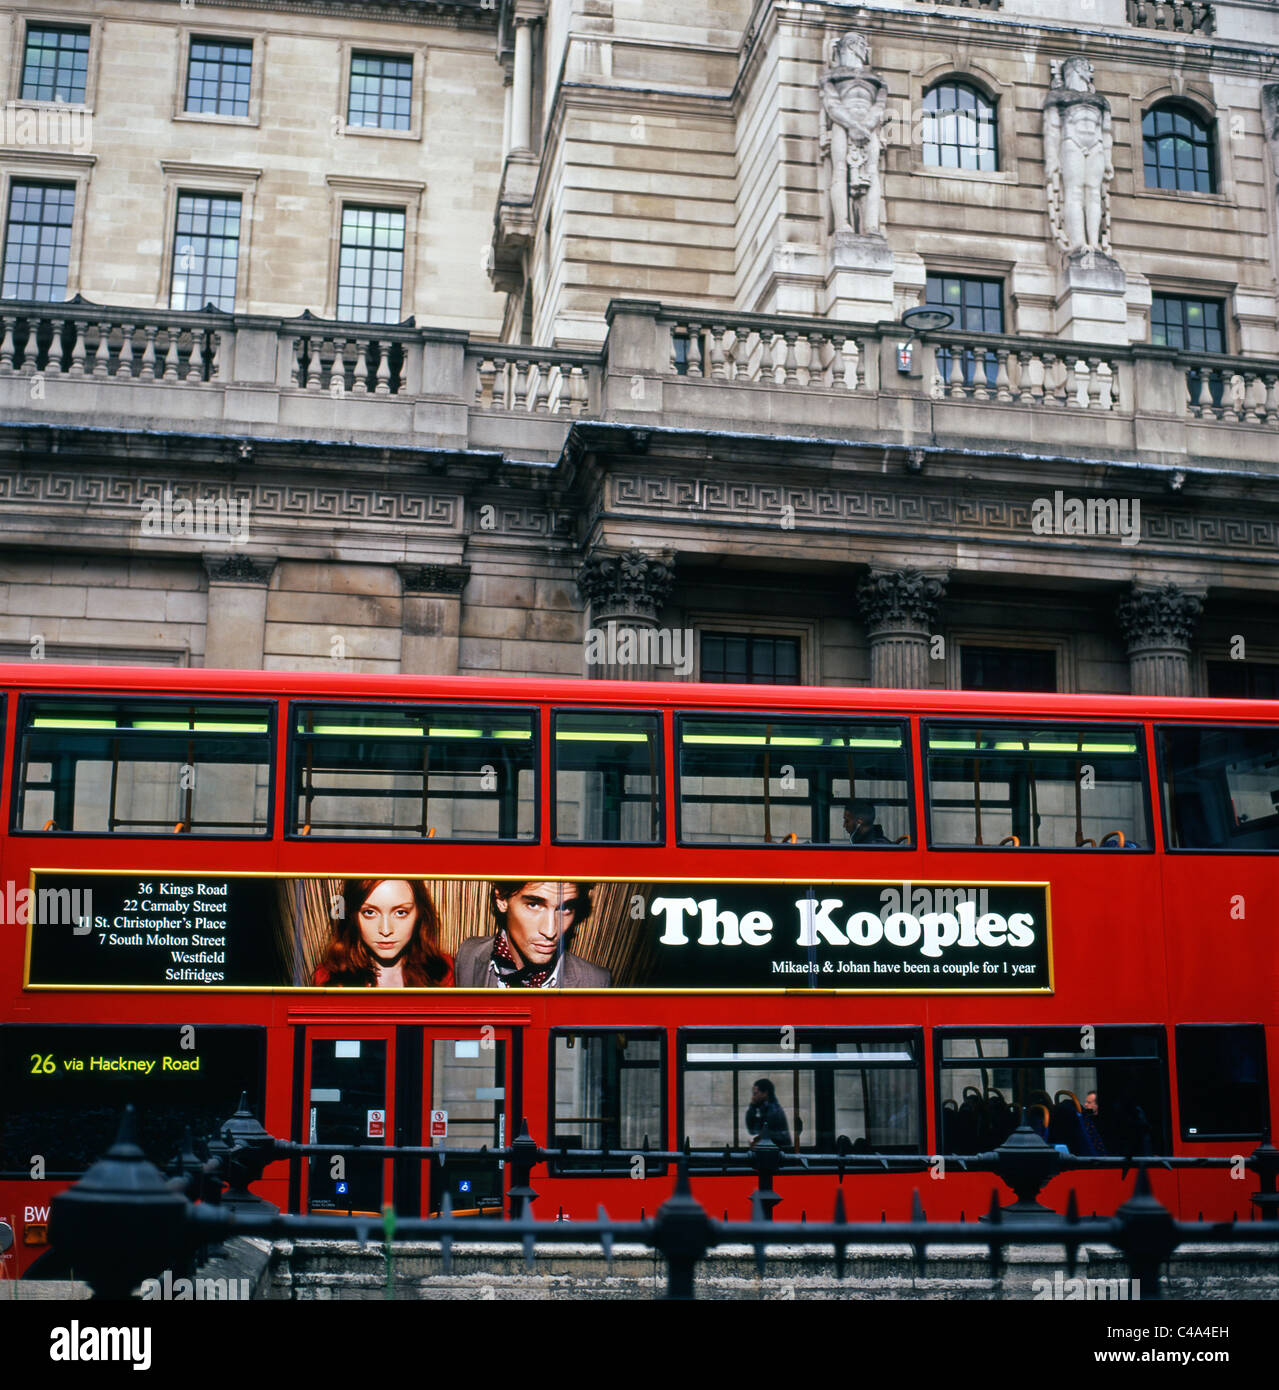 Französische Mode Marke The Kooples Werbung auf der Seite einen roten Londoner Bus vor der Bank of England, London UK Stockfoto